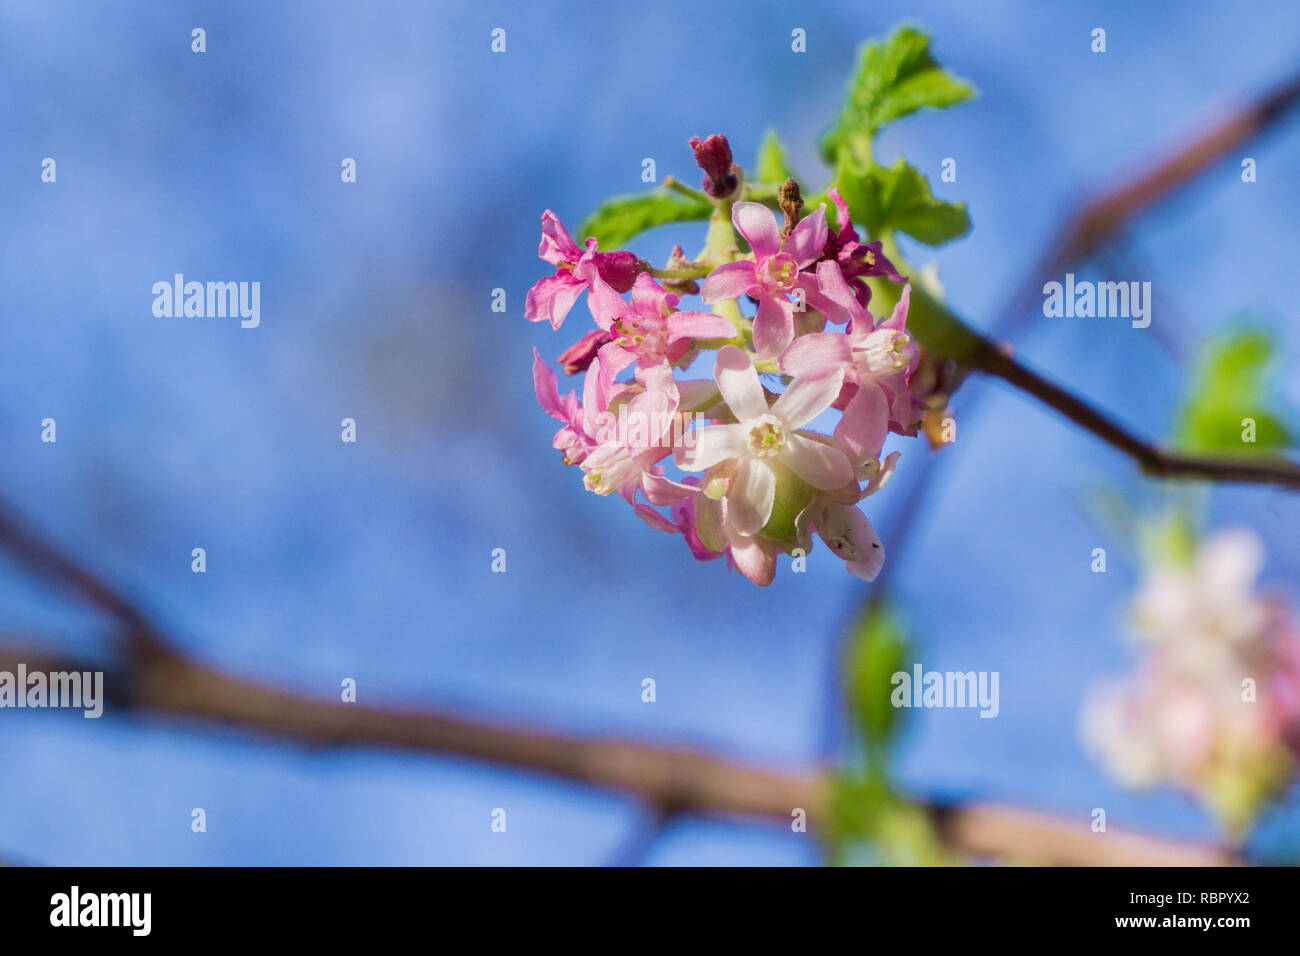 Pink flowering currant ( Ribes sanguineum glutinosum), California Stock Photo